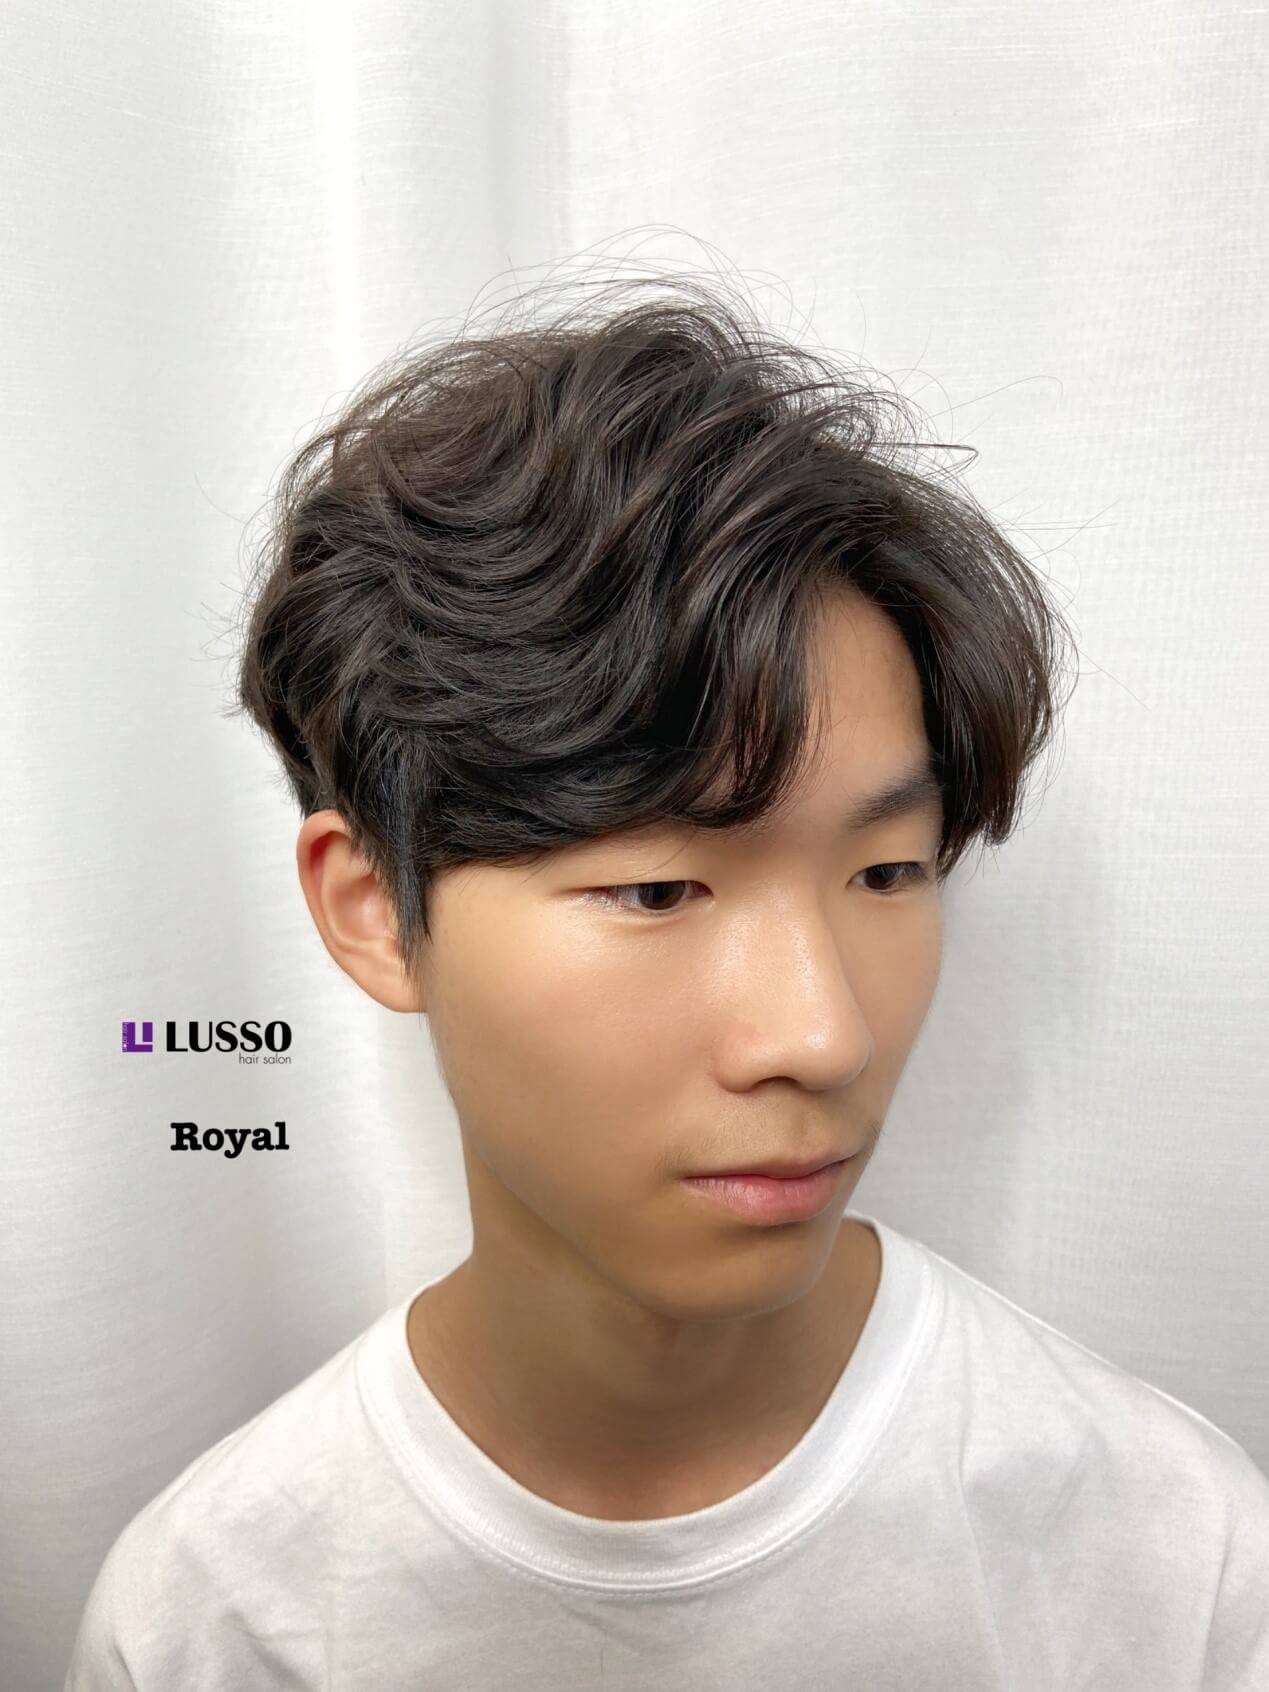 Royay 男生燙髮3 韓系中旁分紋理燙髮